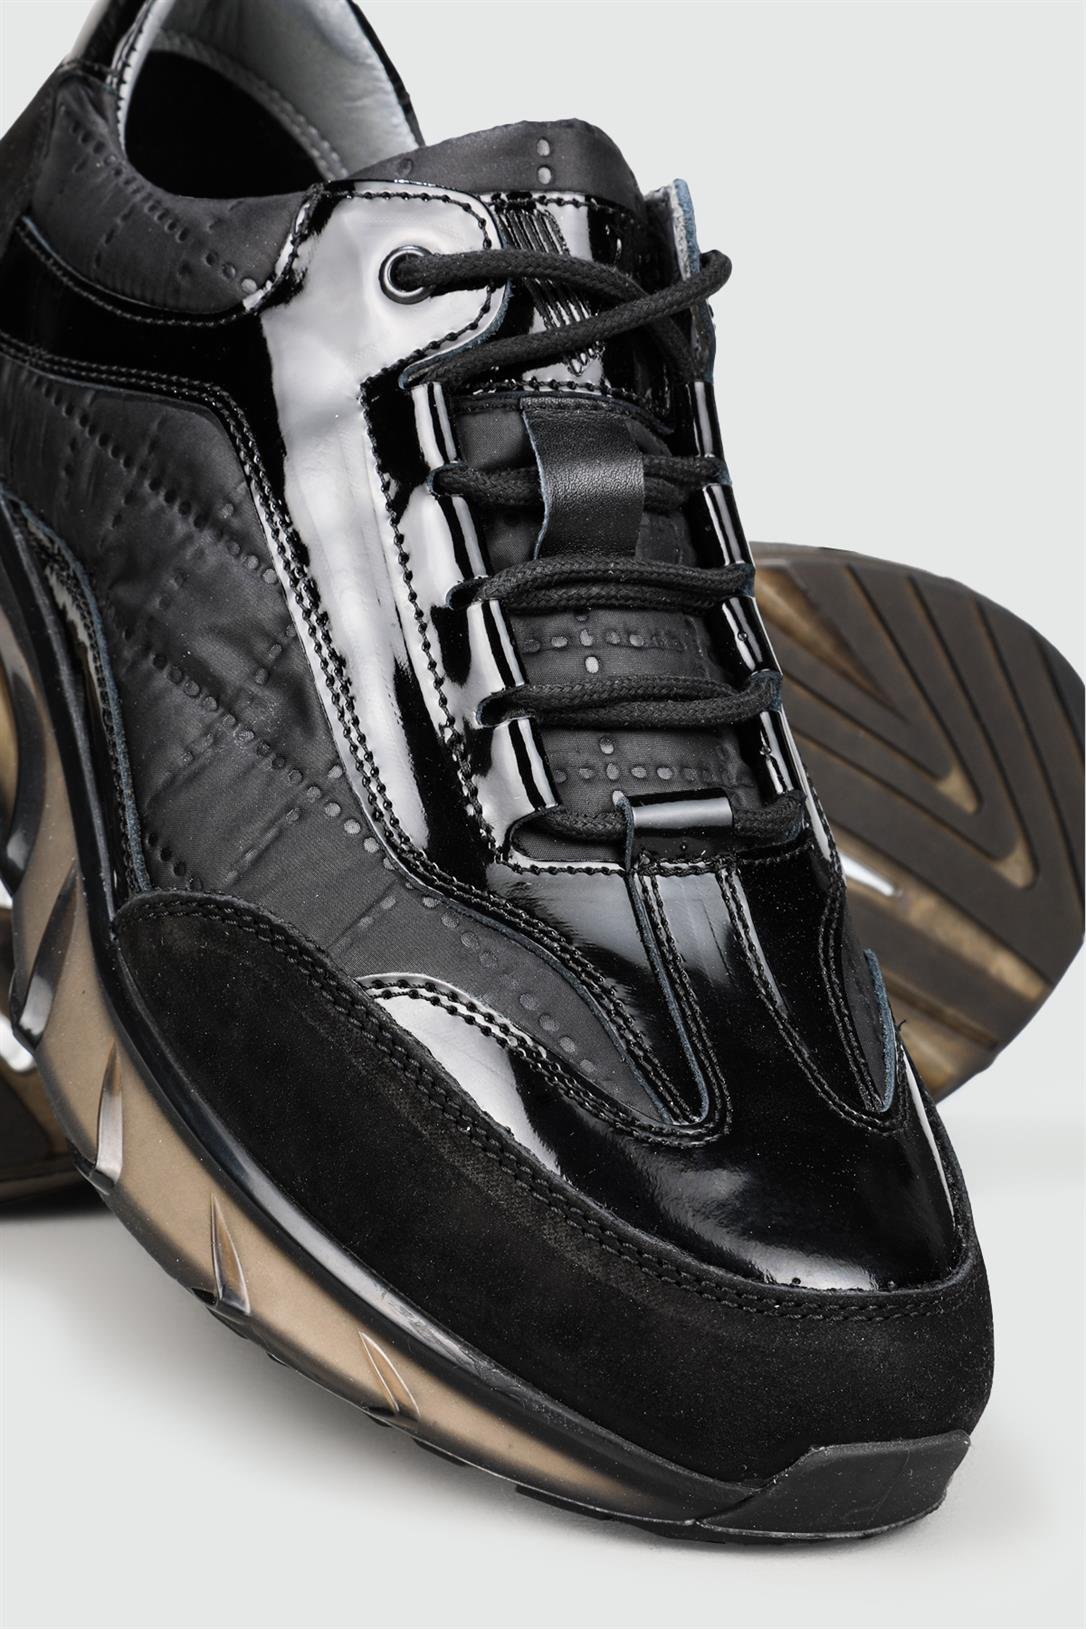 Voyager Hakiki Deri Rahat Comfort Siyah Rugan Erkek Ayakkabı 6017-1-Y |  Ayakkabı City